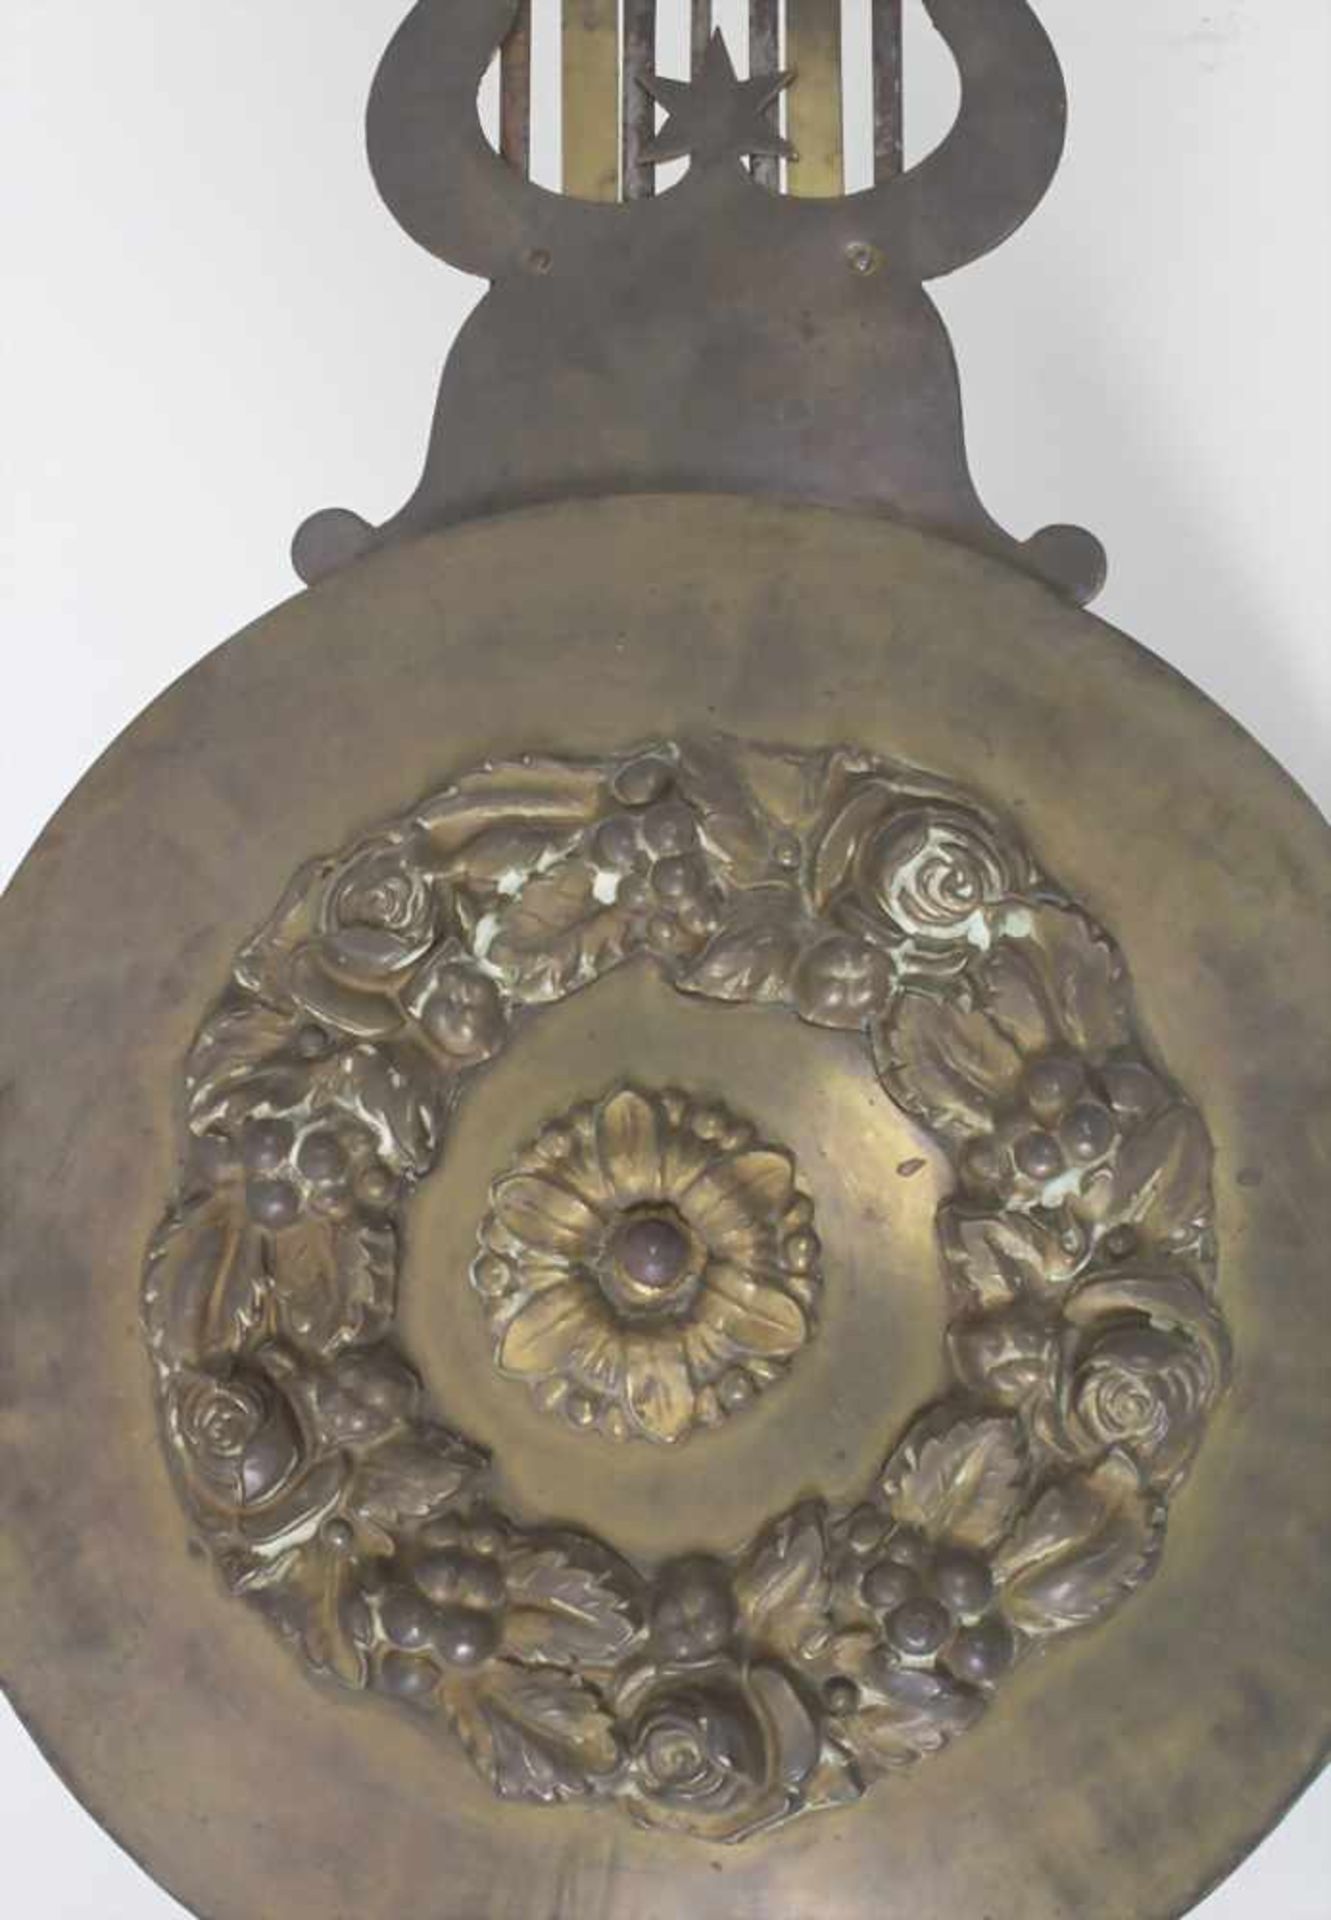 Comtoise/ French Wall Clock, Frankreich, 1. Hälfte 19. Jh.Gehäuse: geprägtes Messingblech,Uhrwerk: - Bild 3 aus 11